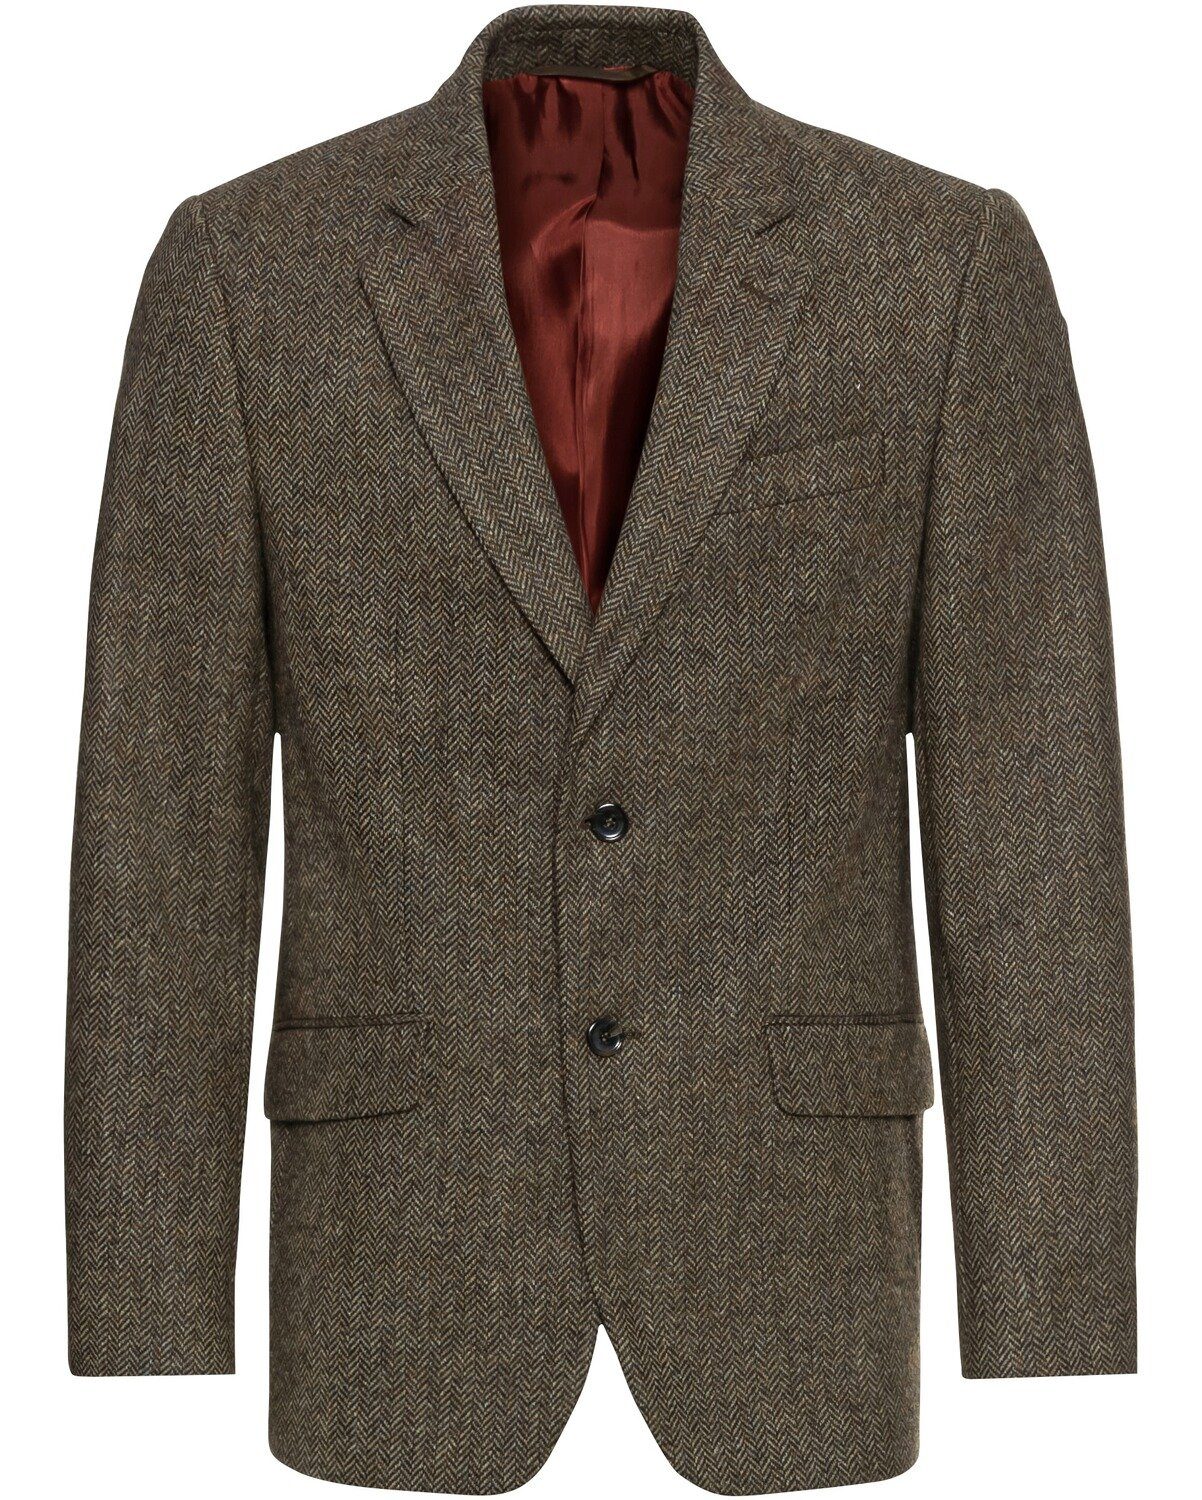 Highmoor Sakko »Tweed-Sakko« online kaufen | OTTO